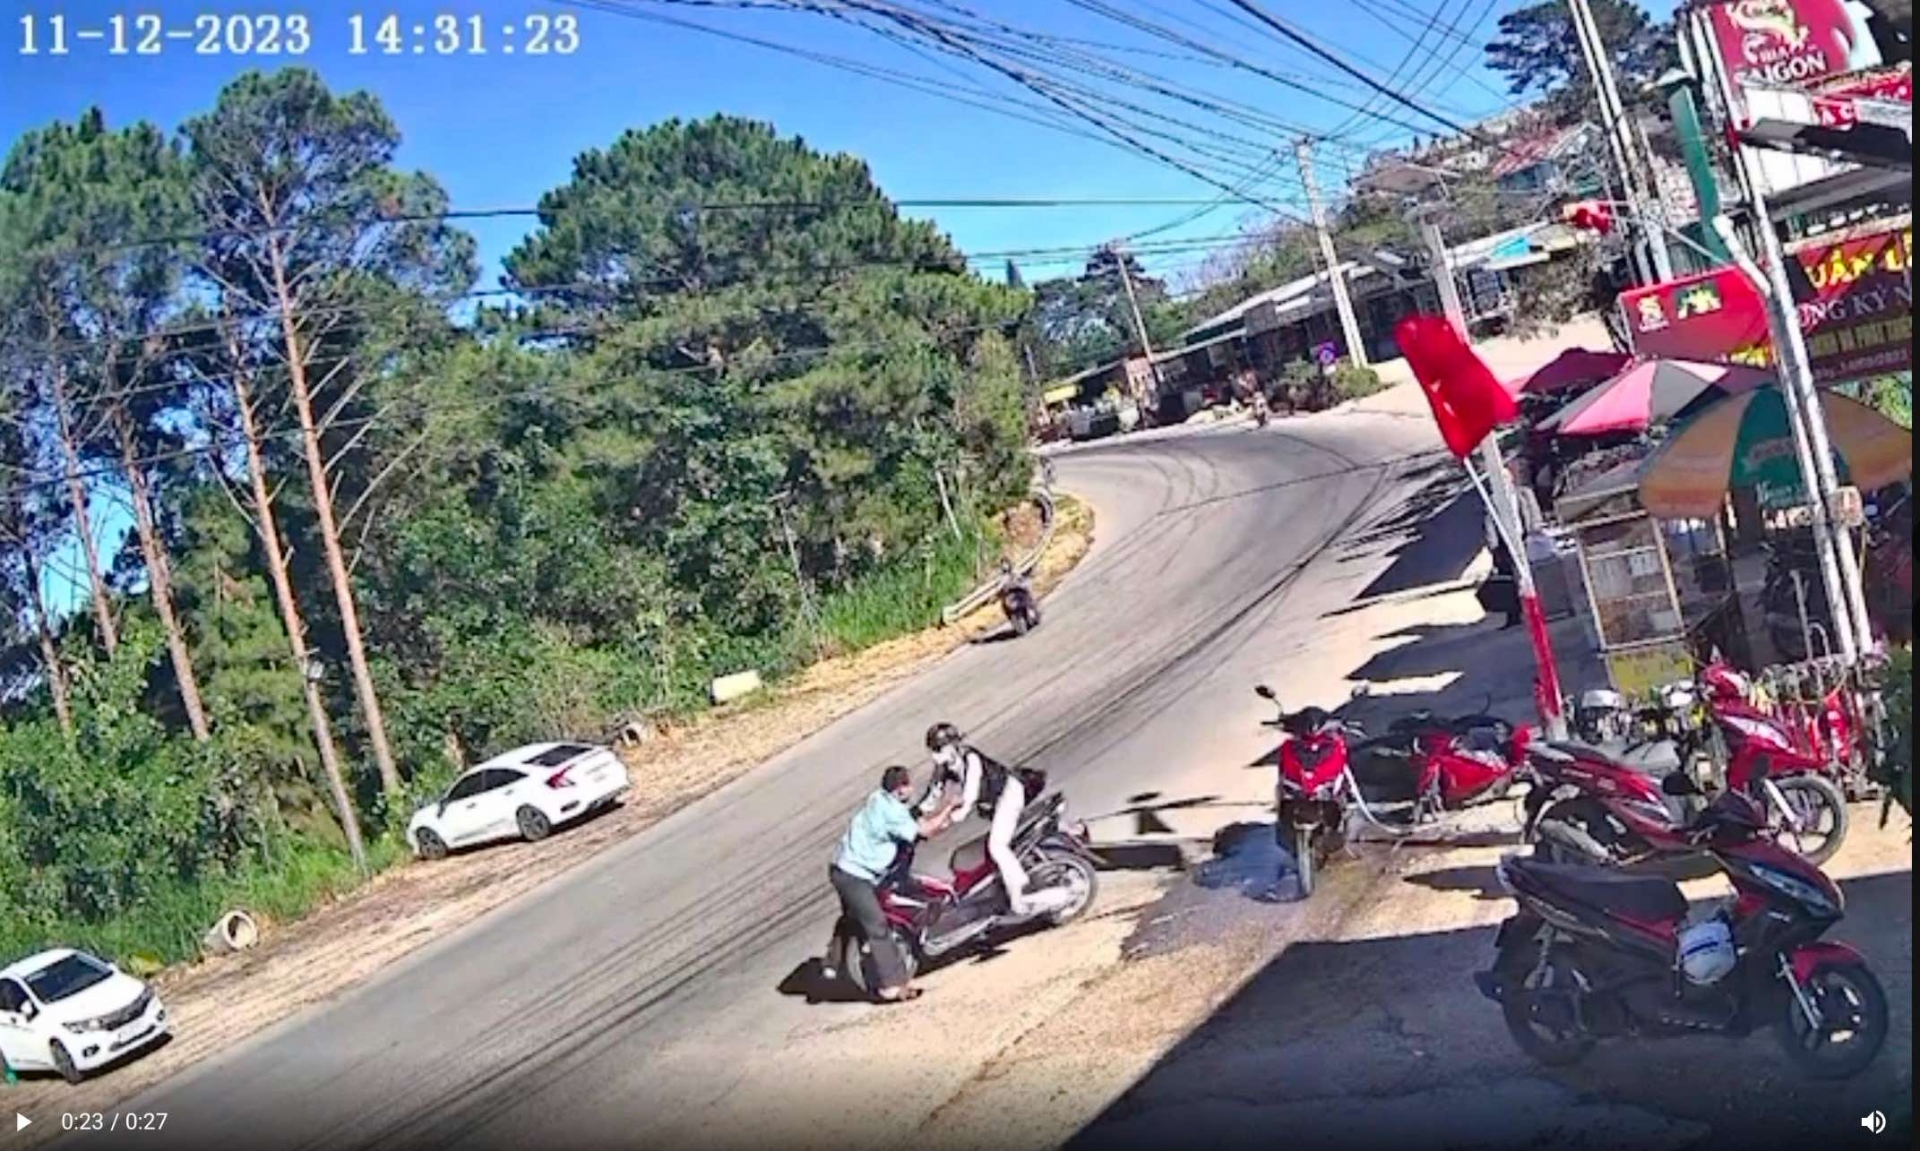 Liều lĩnh trộm xe máy ngay trước mặt chủ nhà